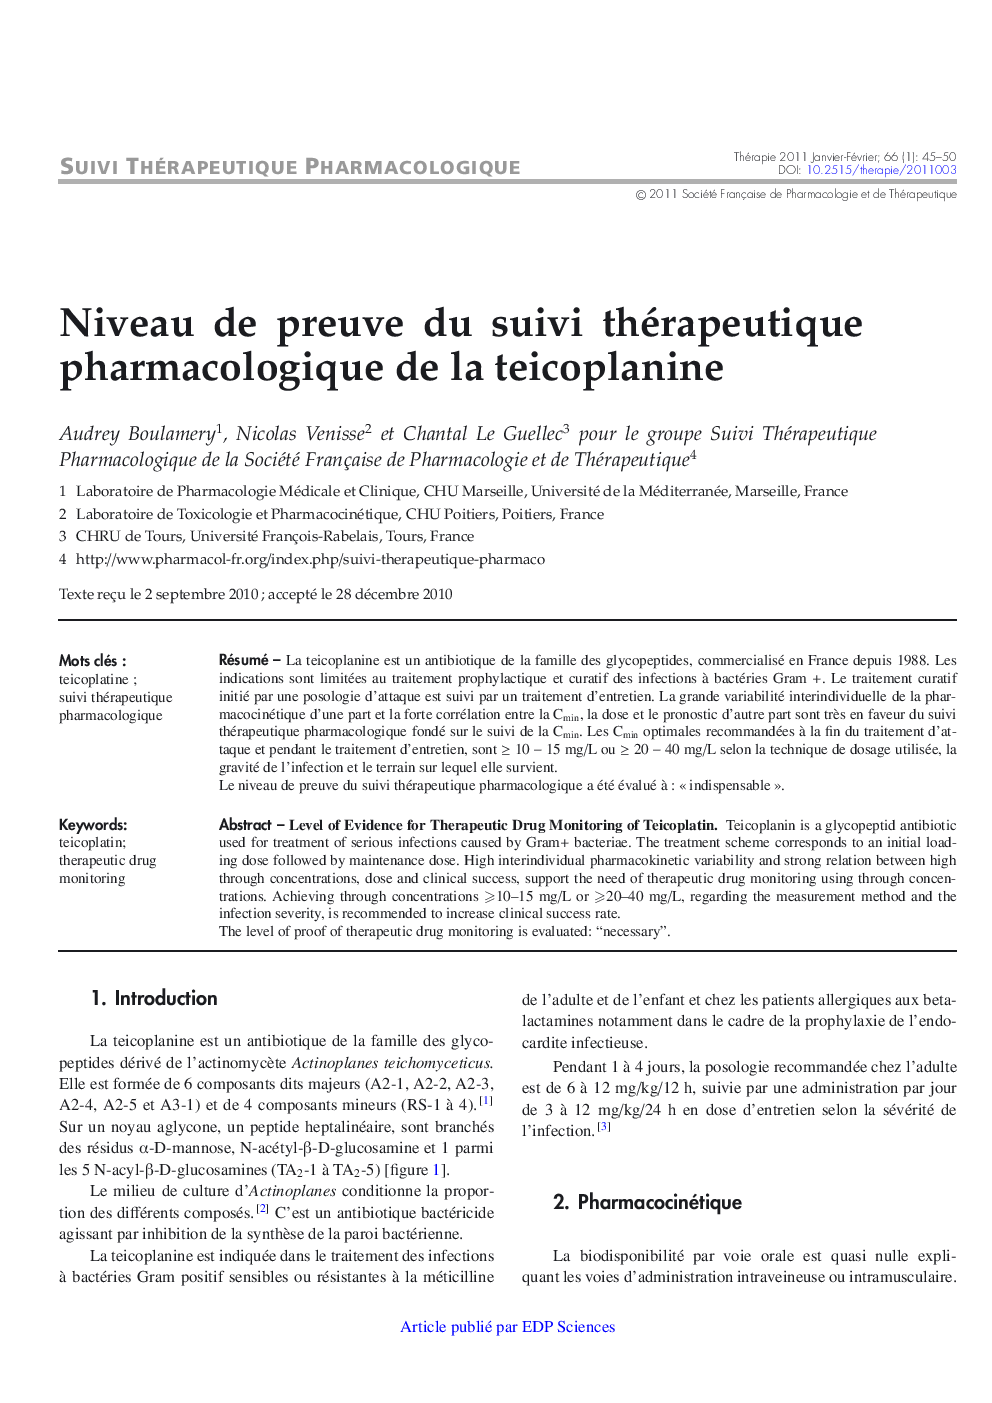 Niveau de preuve du suivi thérapeutique pharmacologique de la teicoplanine